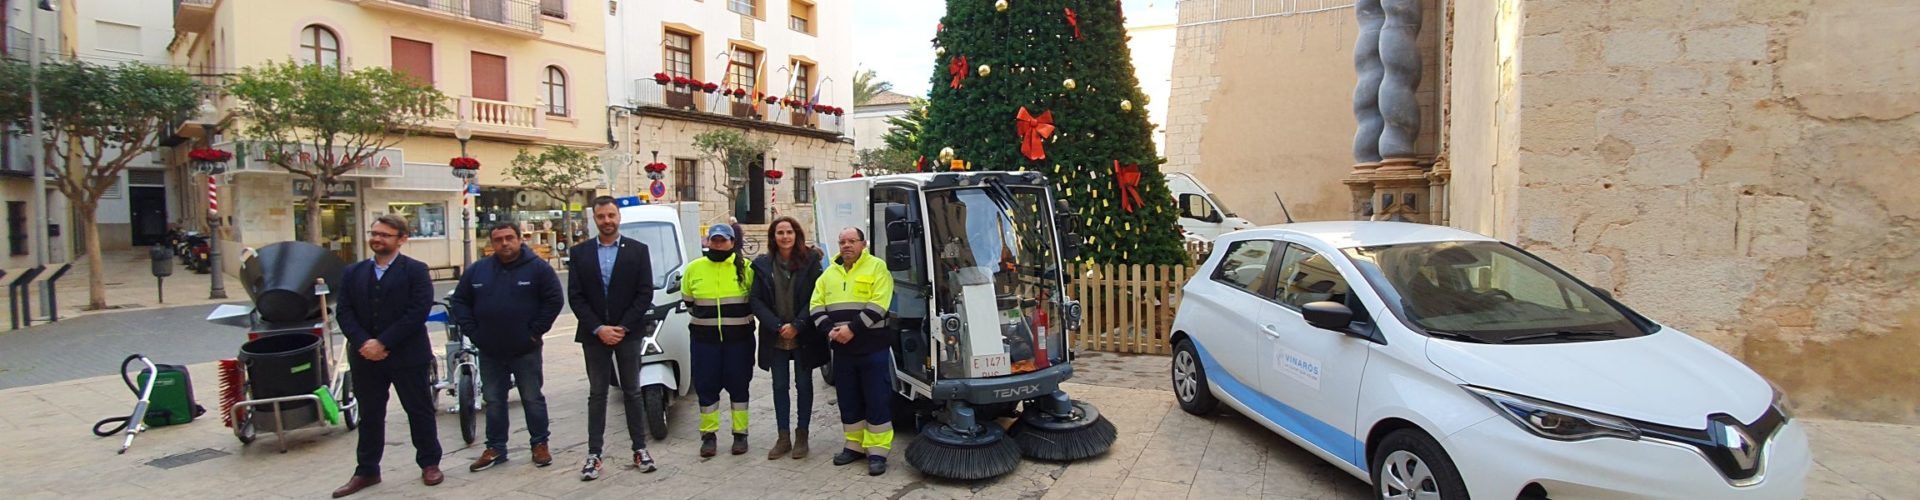 Vídeo: nous vehicles de neteja viària a Vinaròs